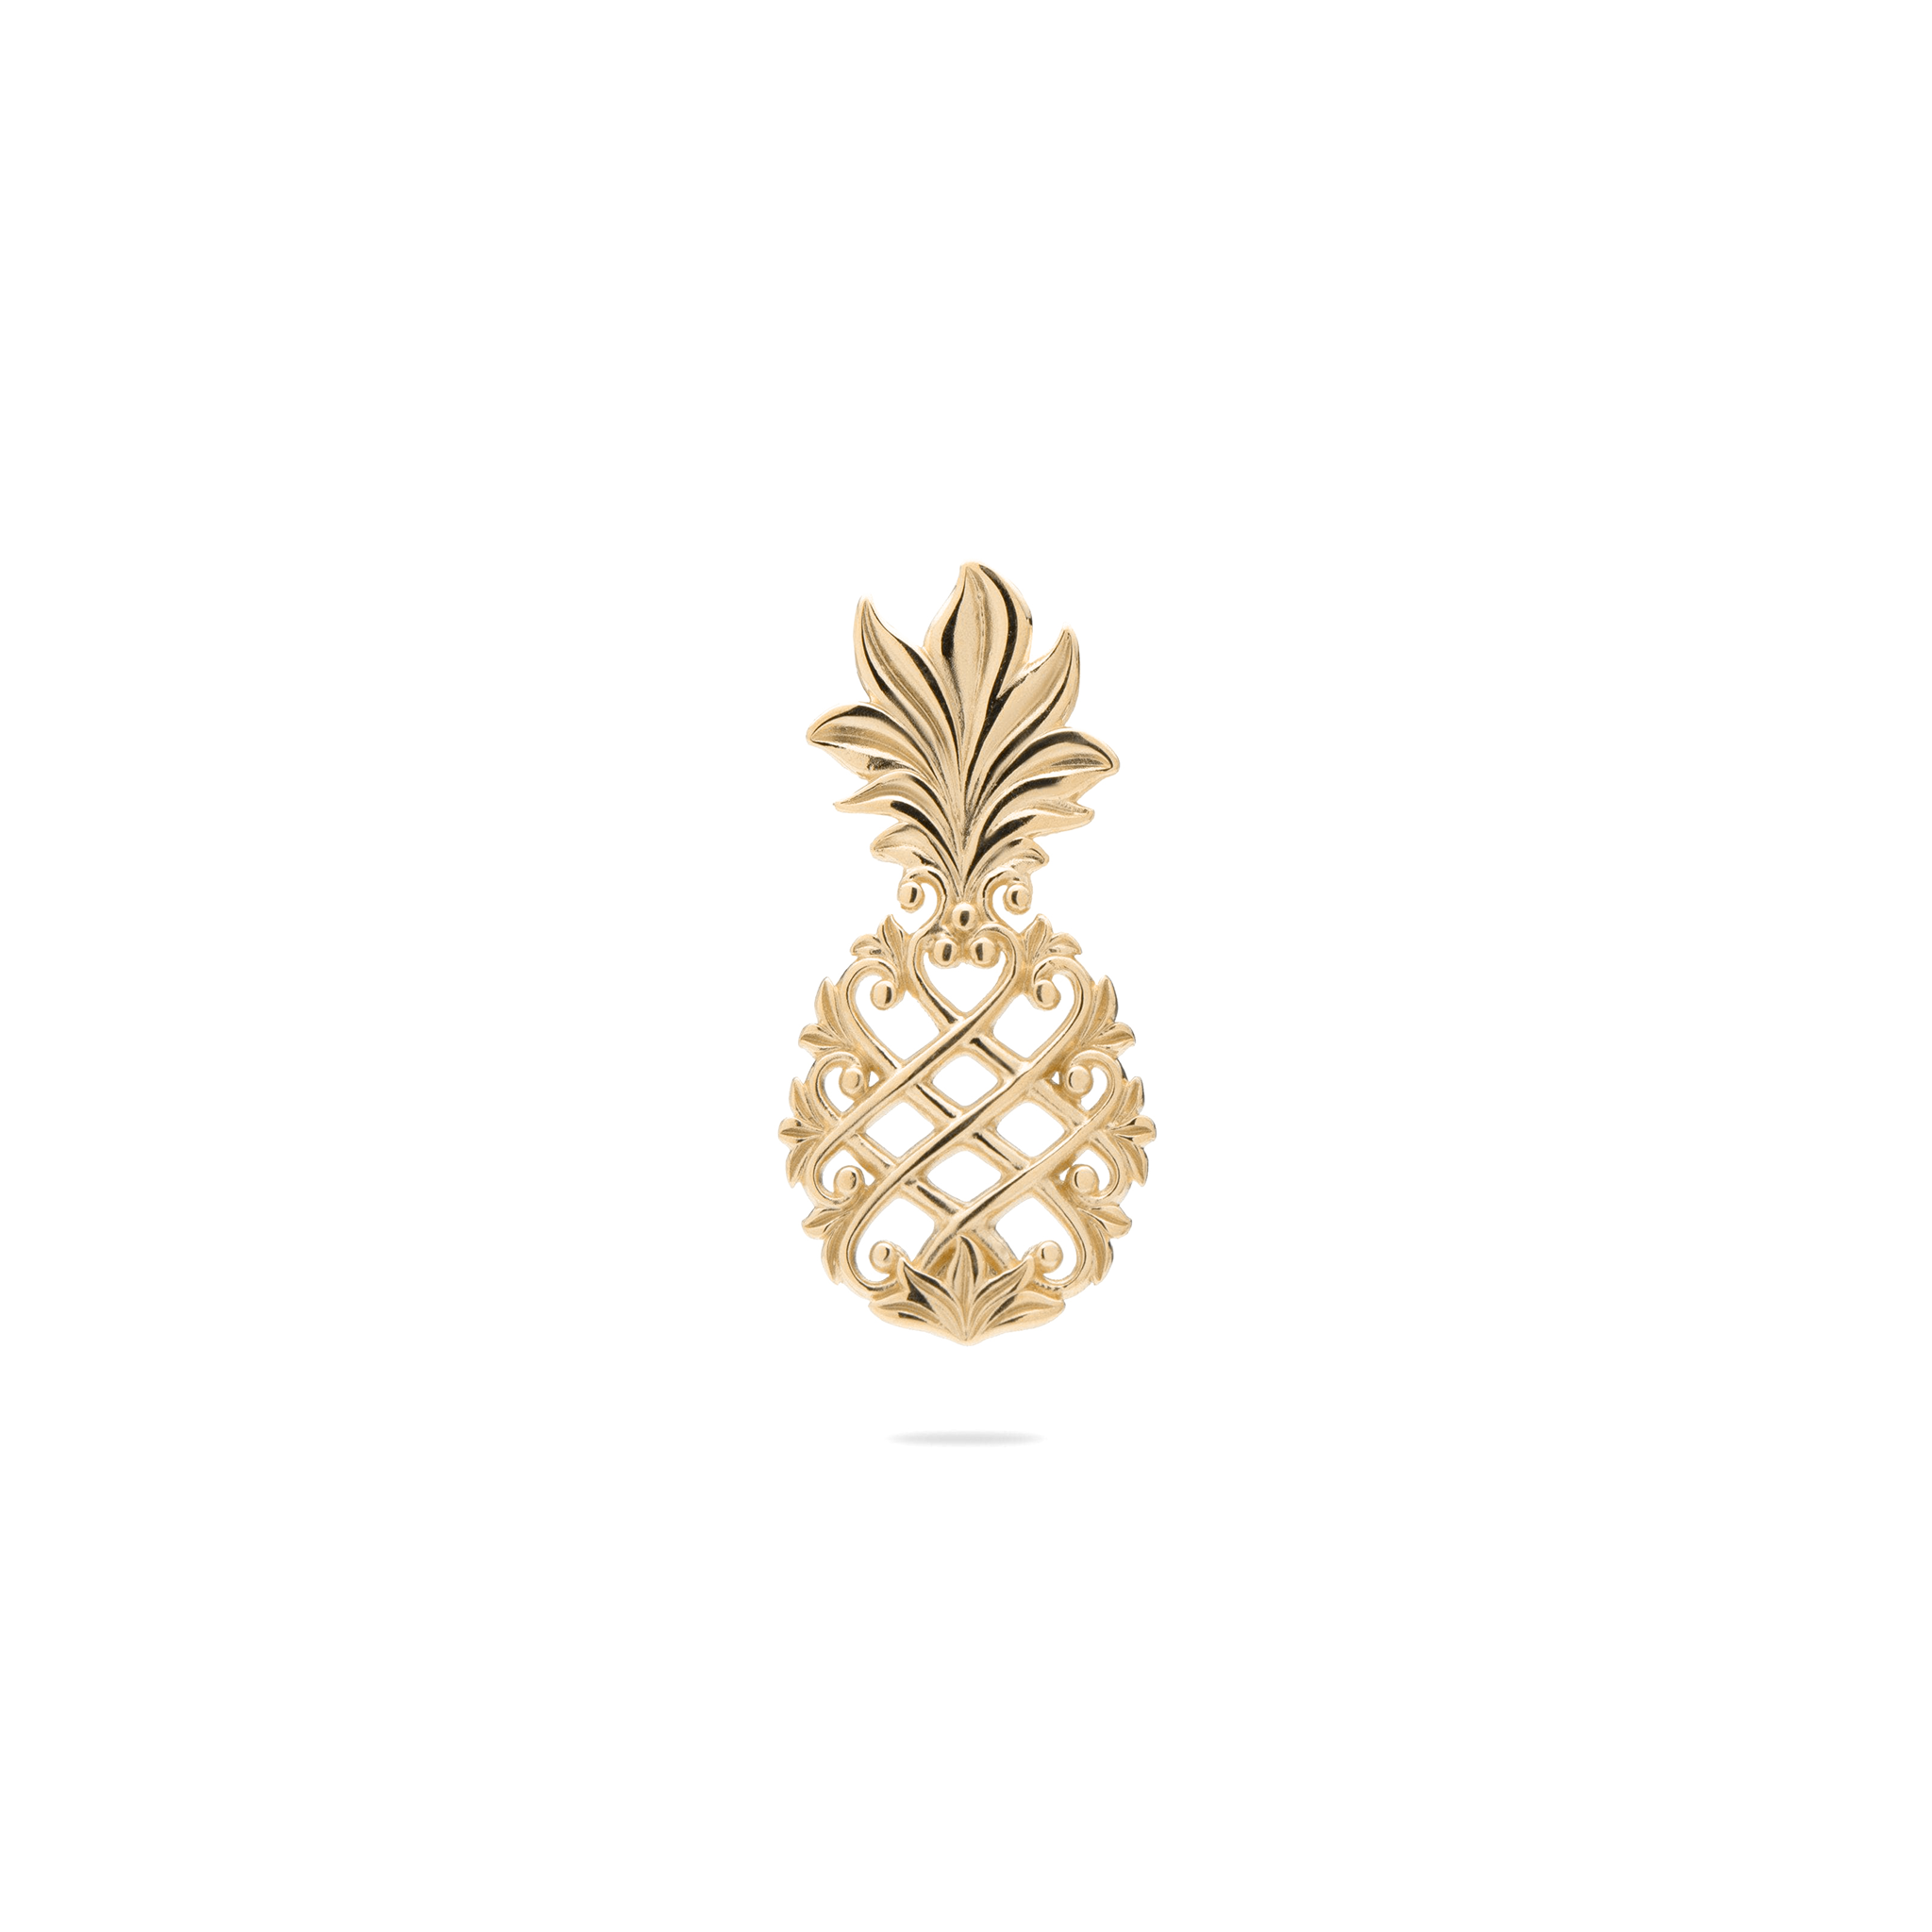 Living Heirloom Pineapple Pendant in Gold - 23mm